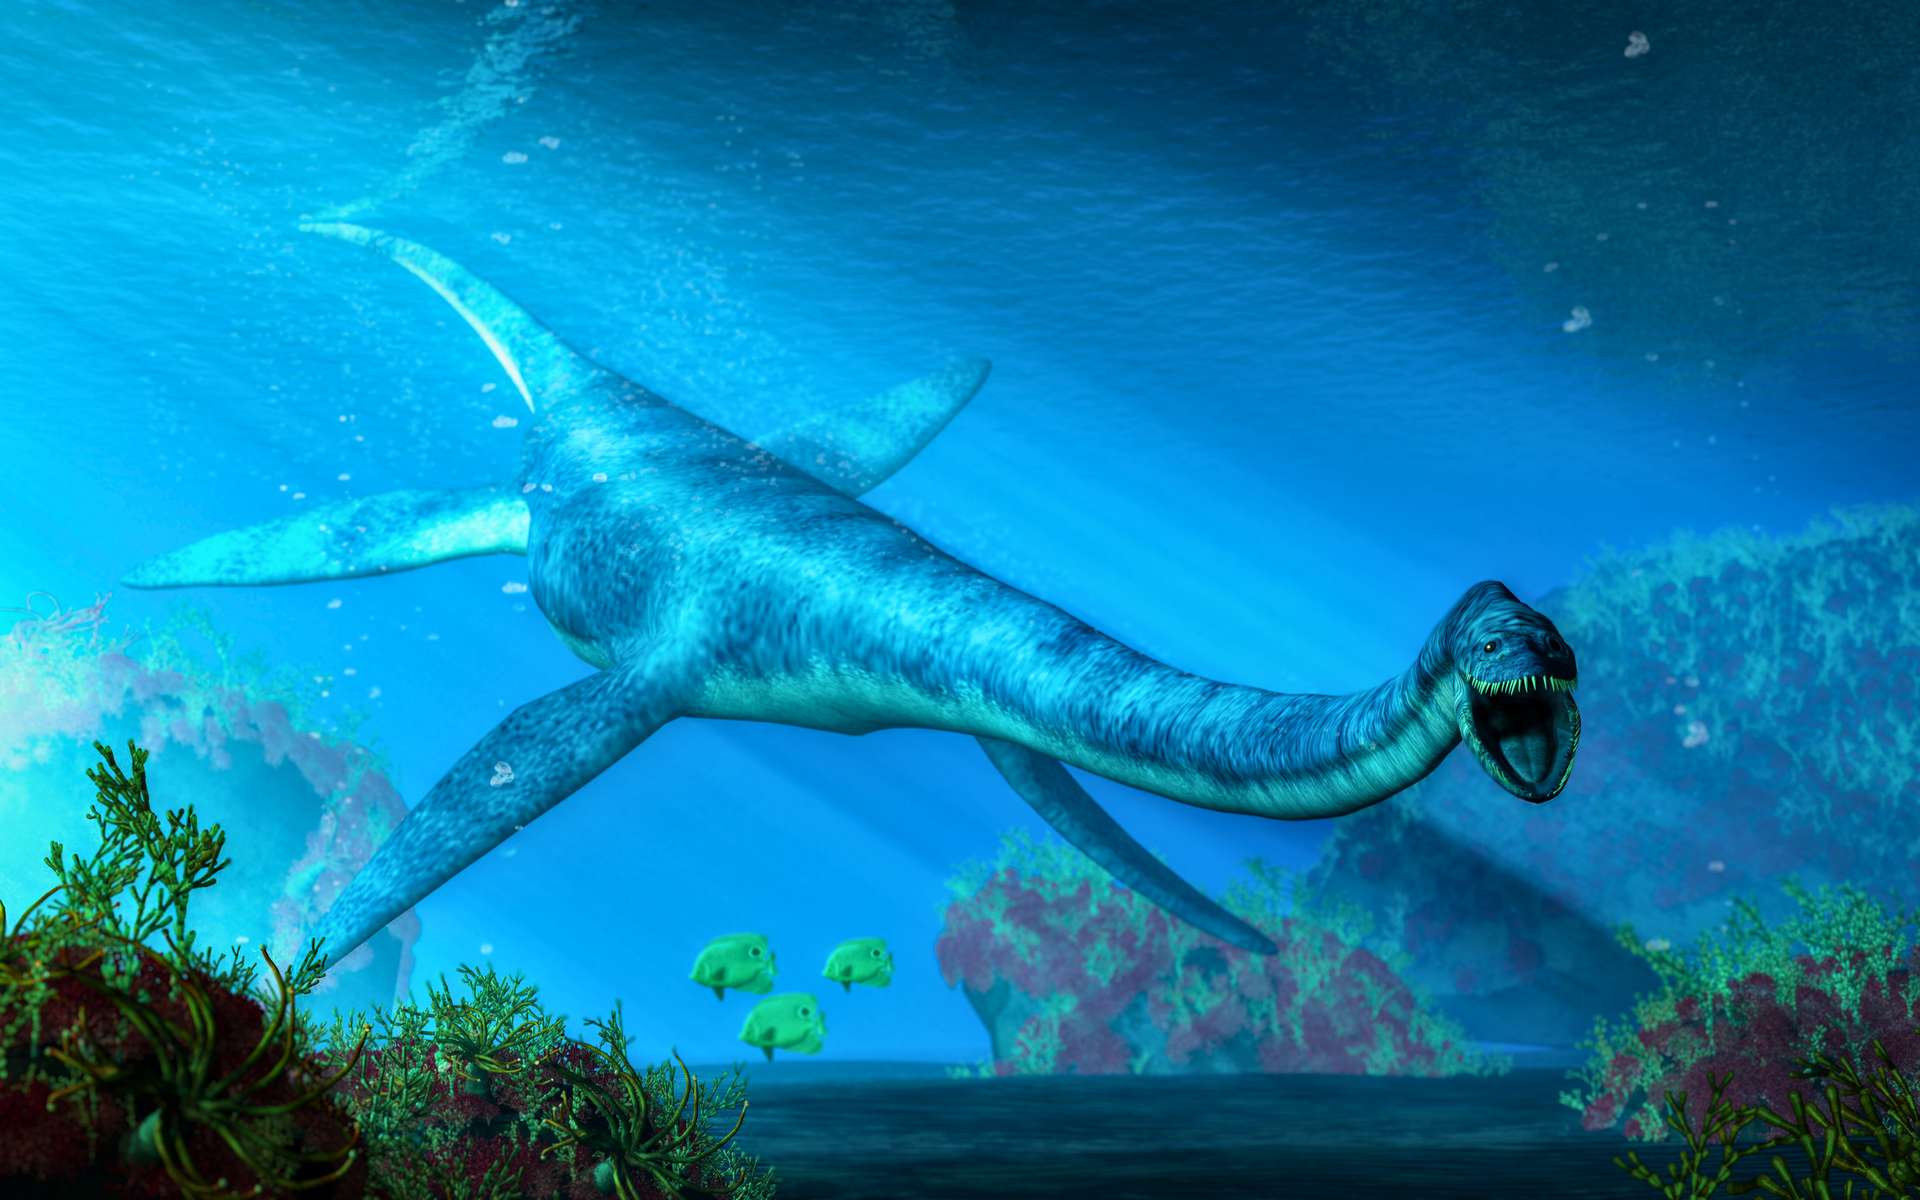 Une nouvelle espèce préhistorique retrouvée dans le ventre de ce plésiosaure